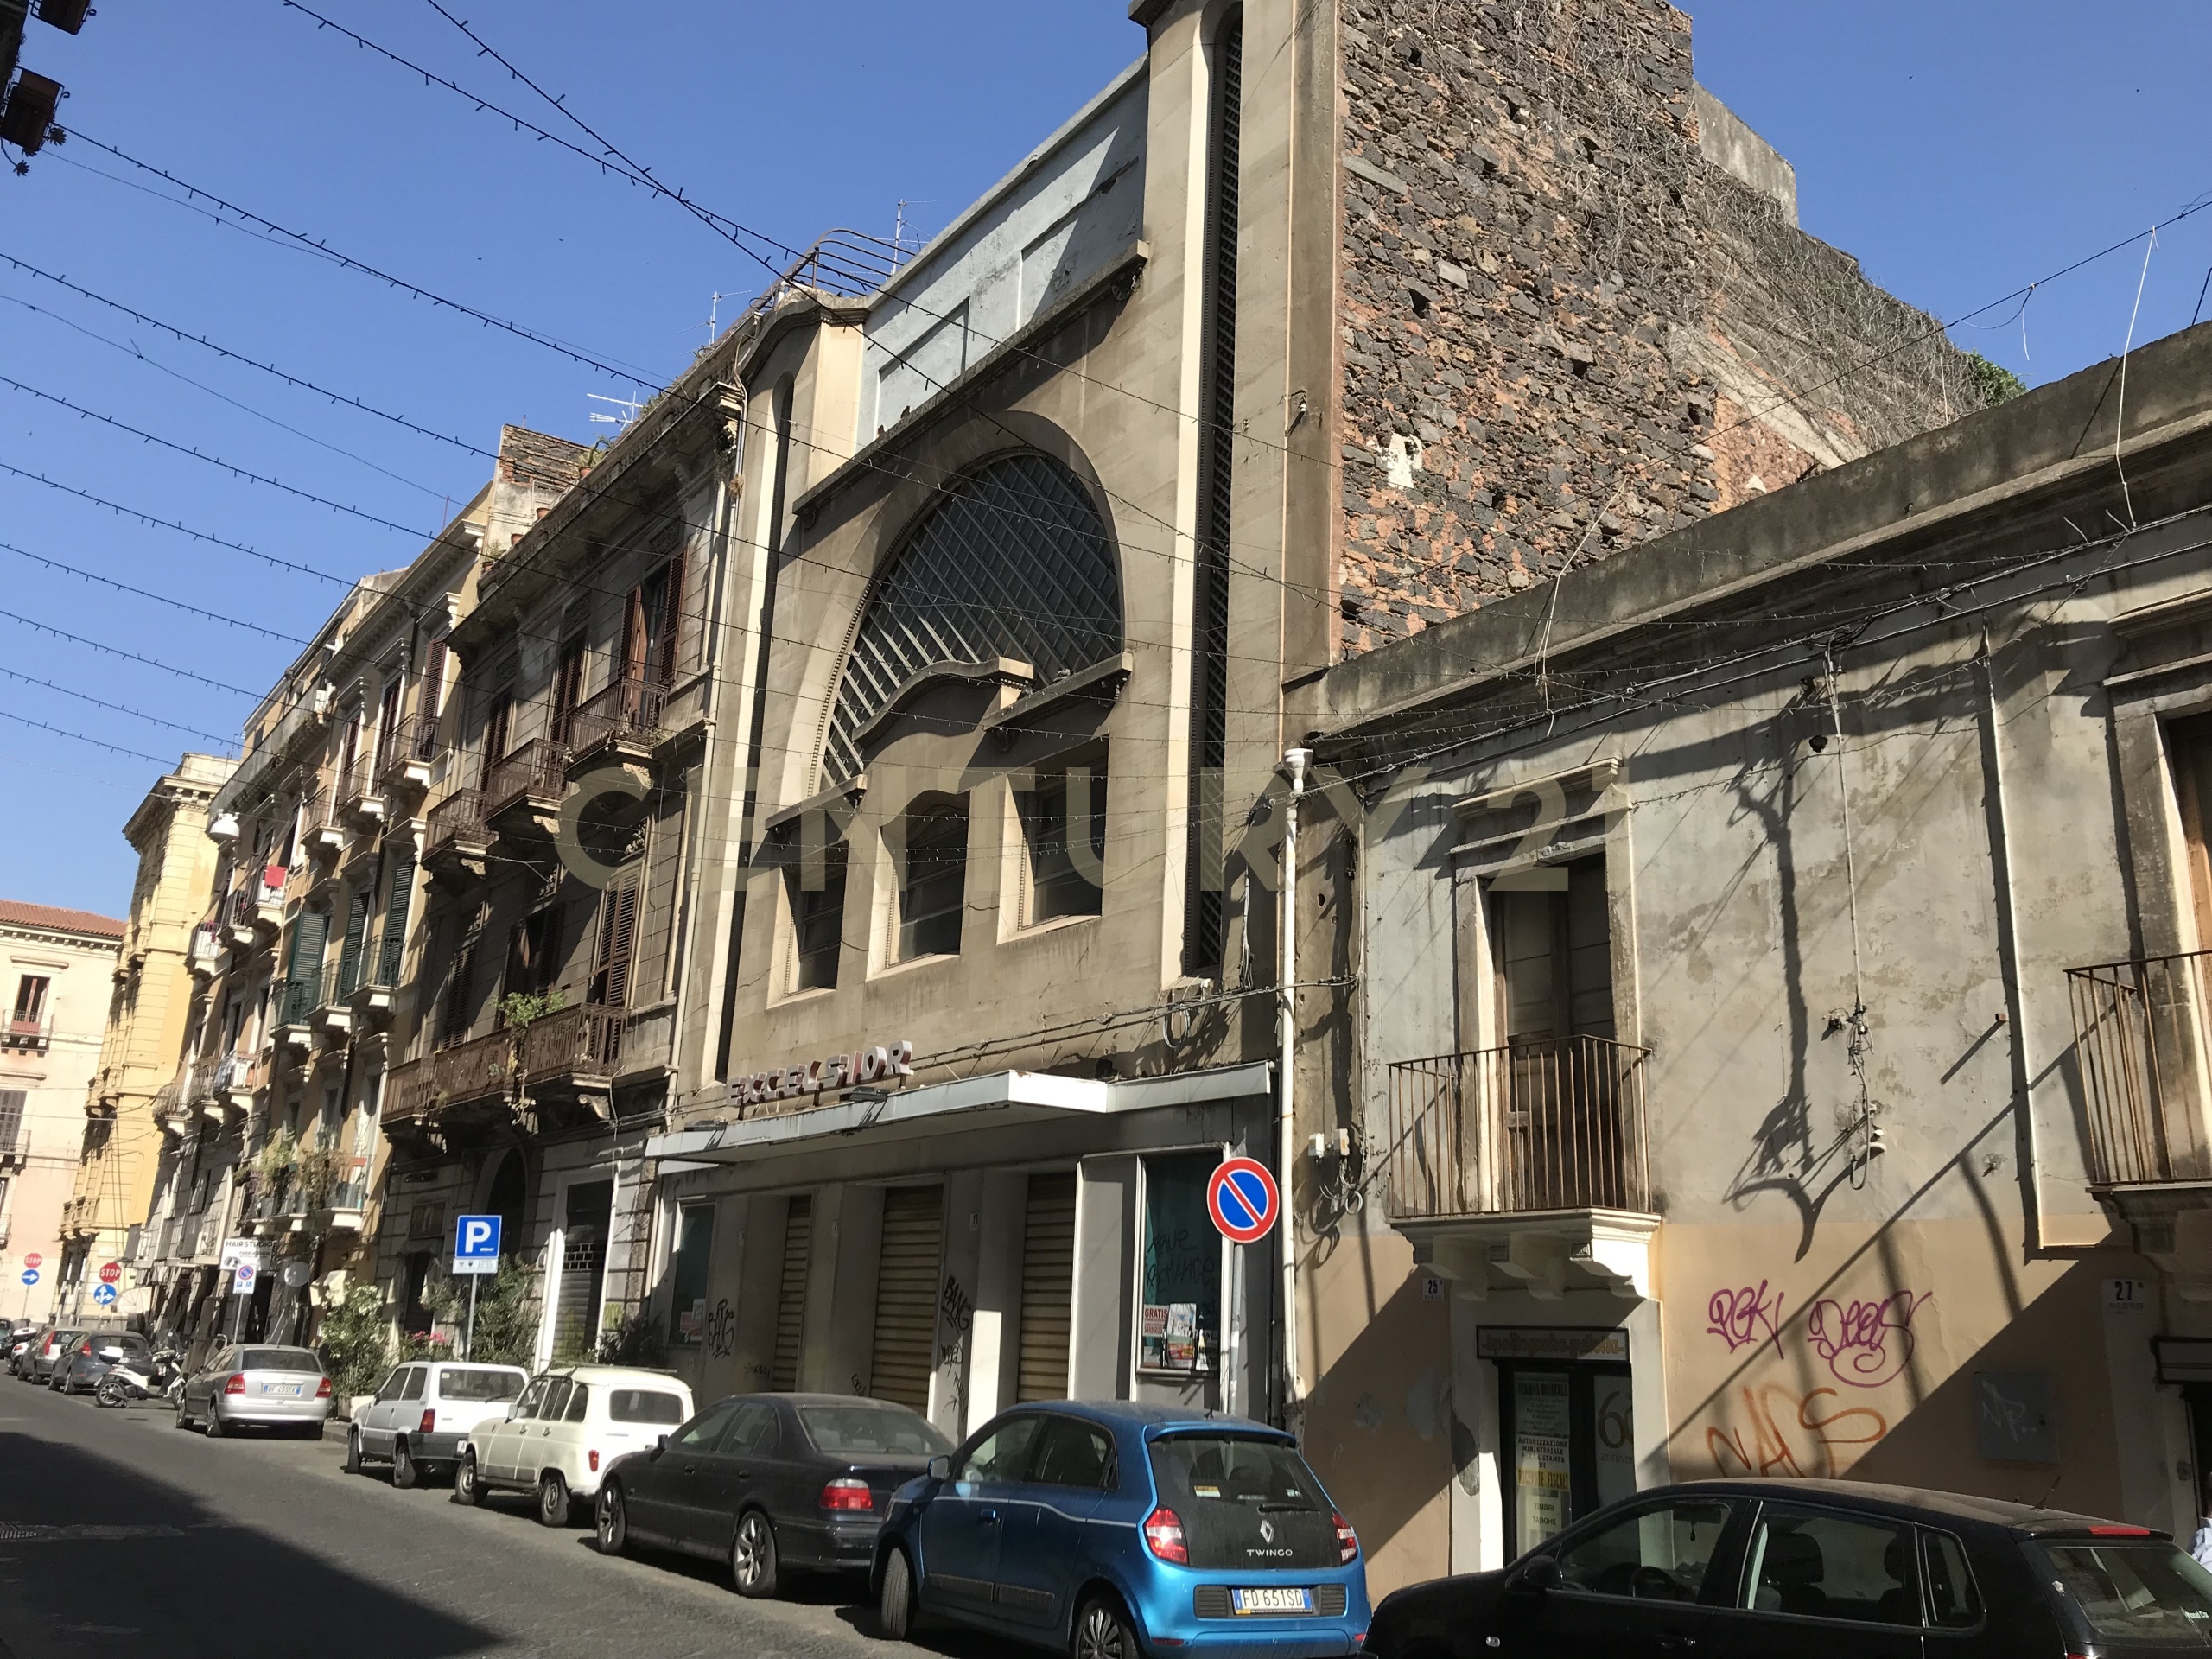 Locale commerciale da ristrutturare in via giuseppe de felice 19, Catania